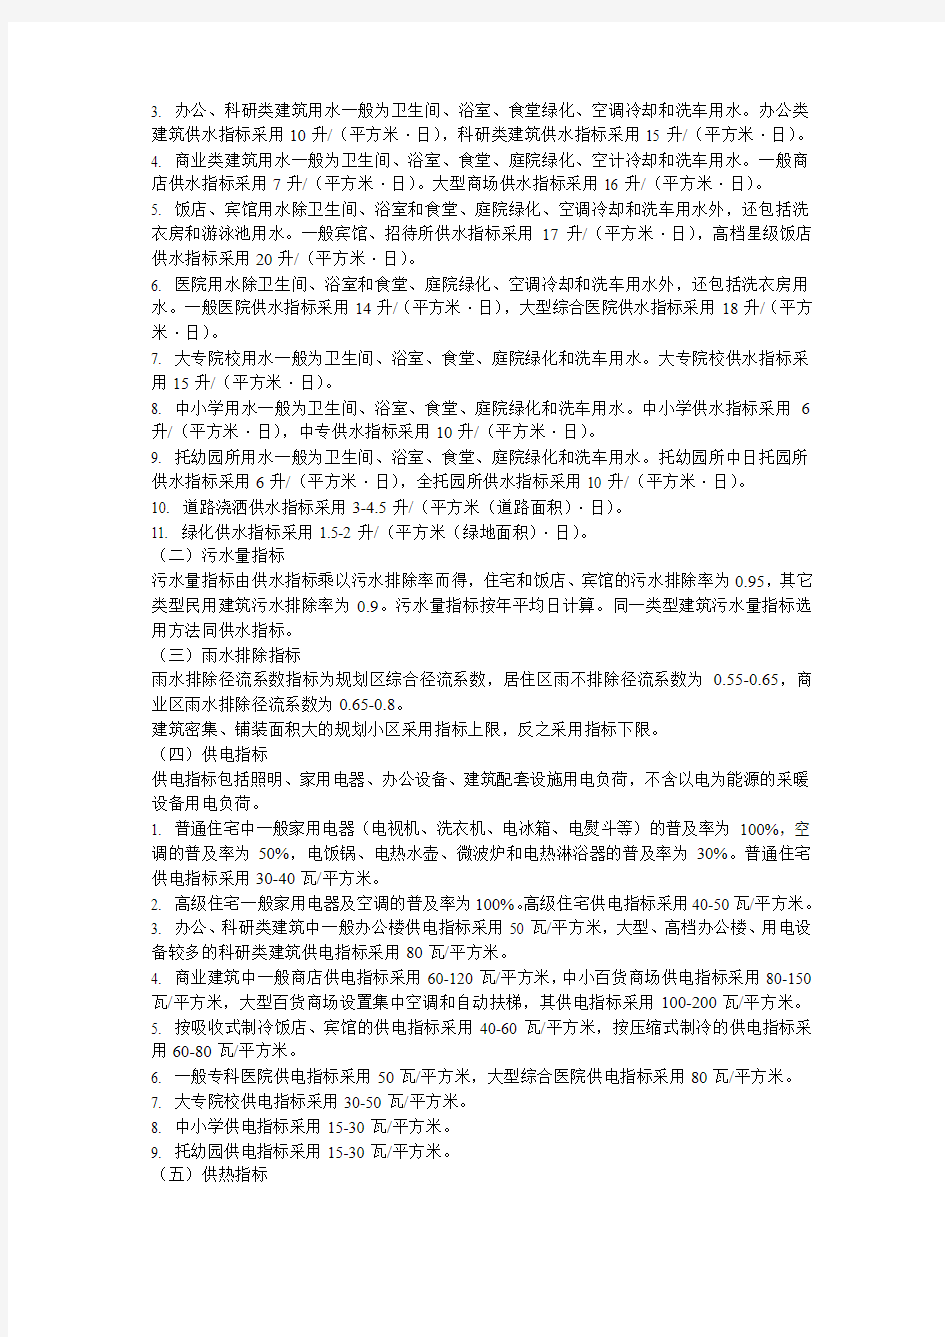 北京市区民用建筑近期市政能源规划指标编制说明